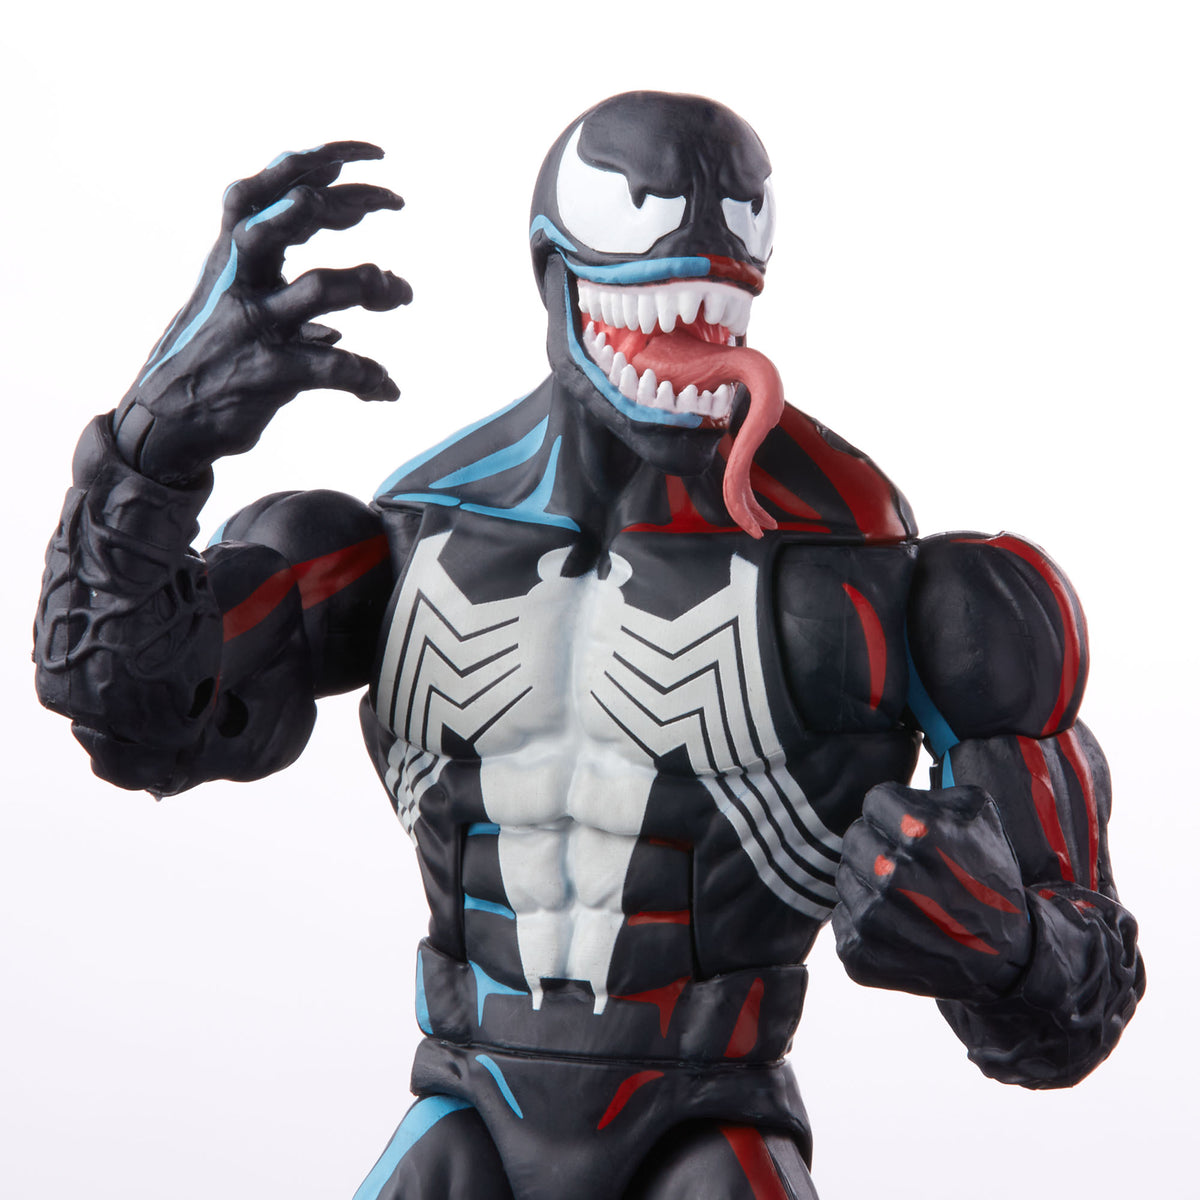 Spider-Man 6-inch Venom Figure 